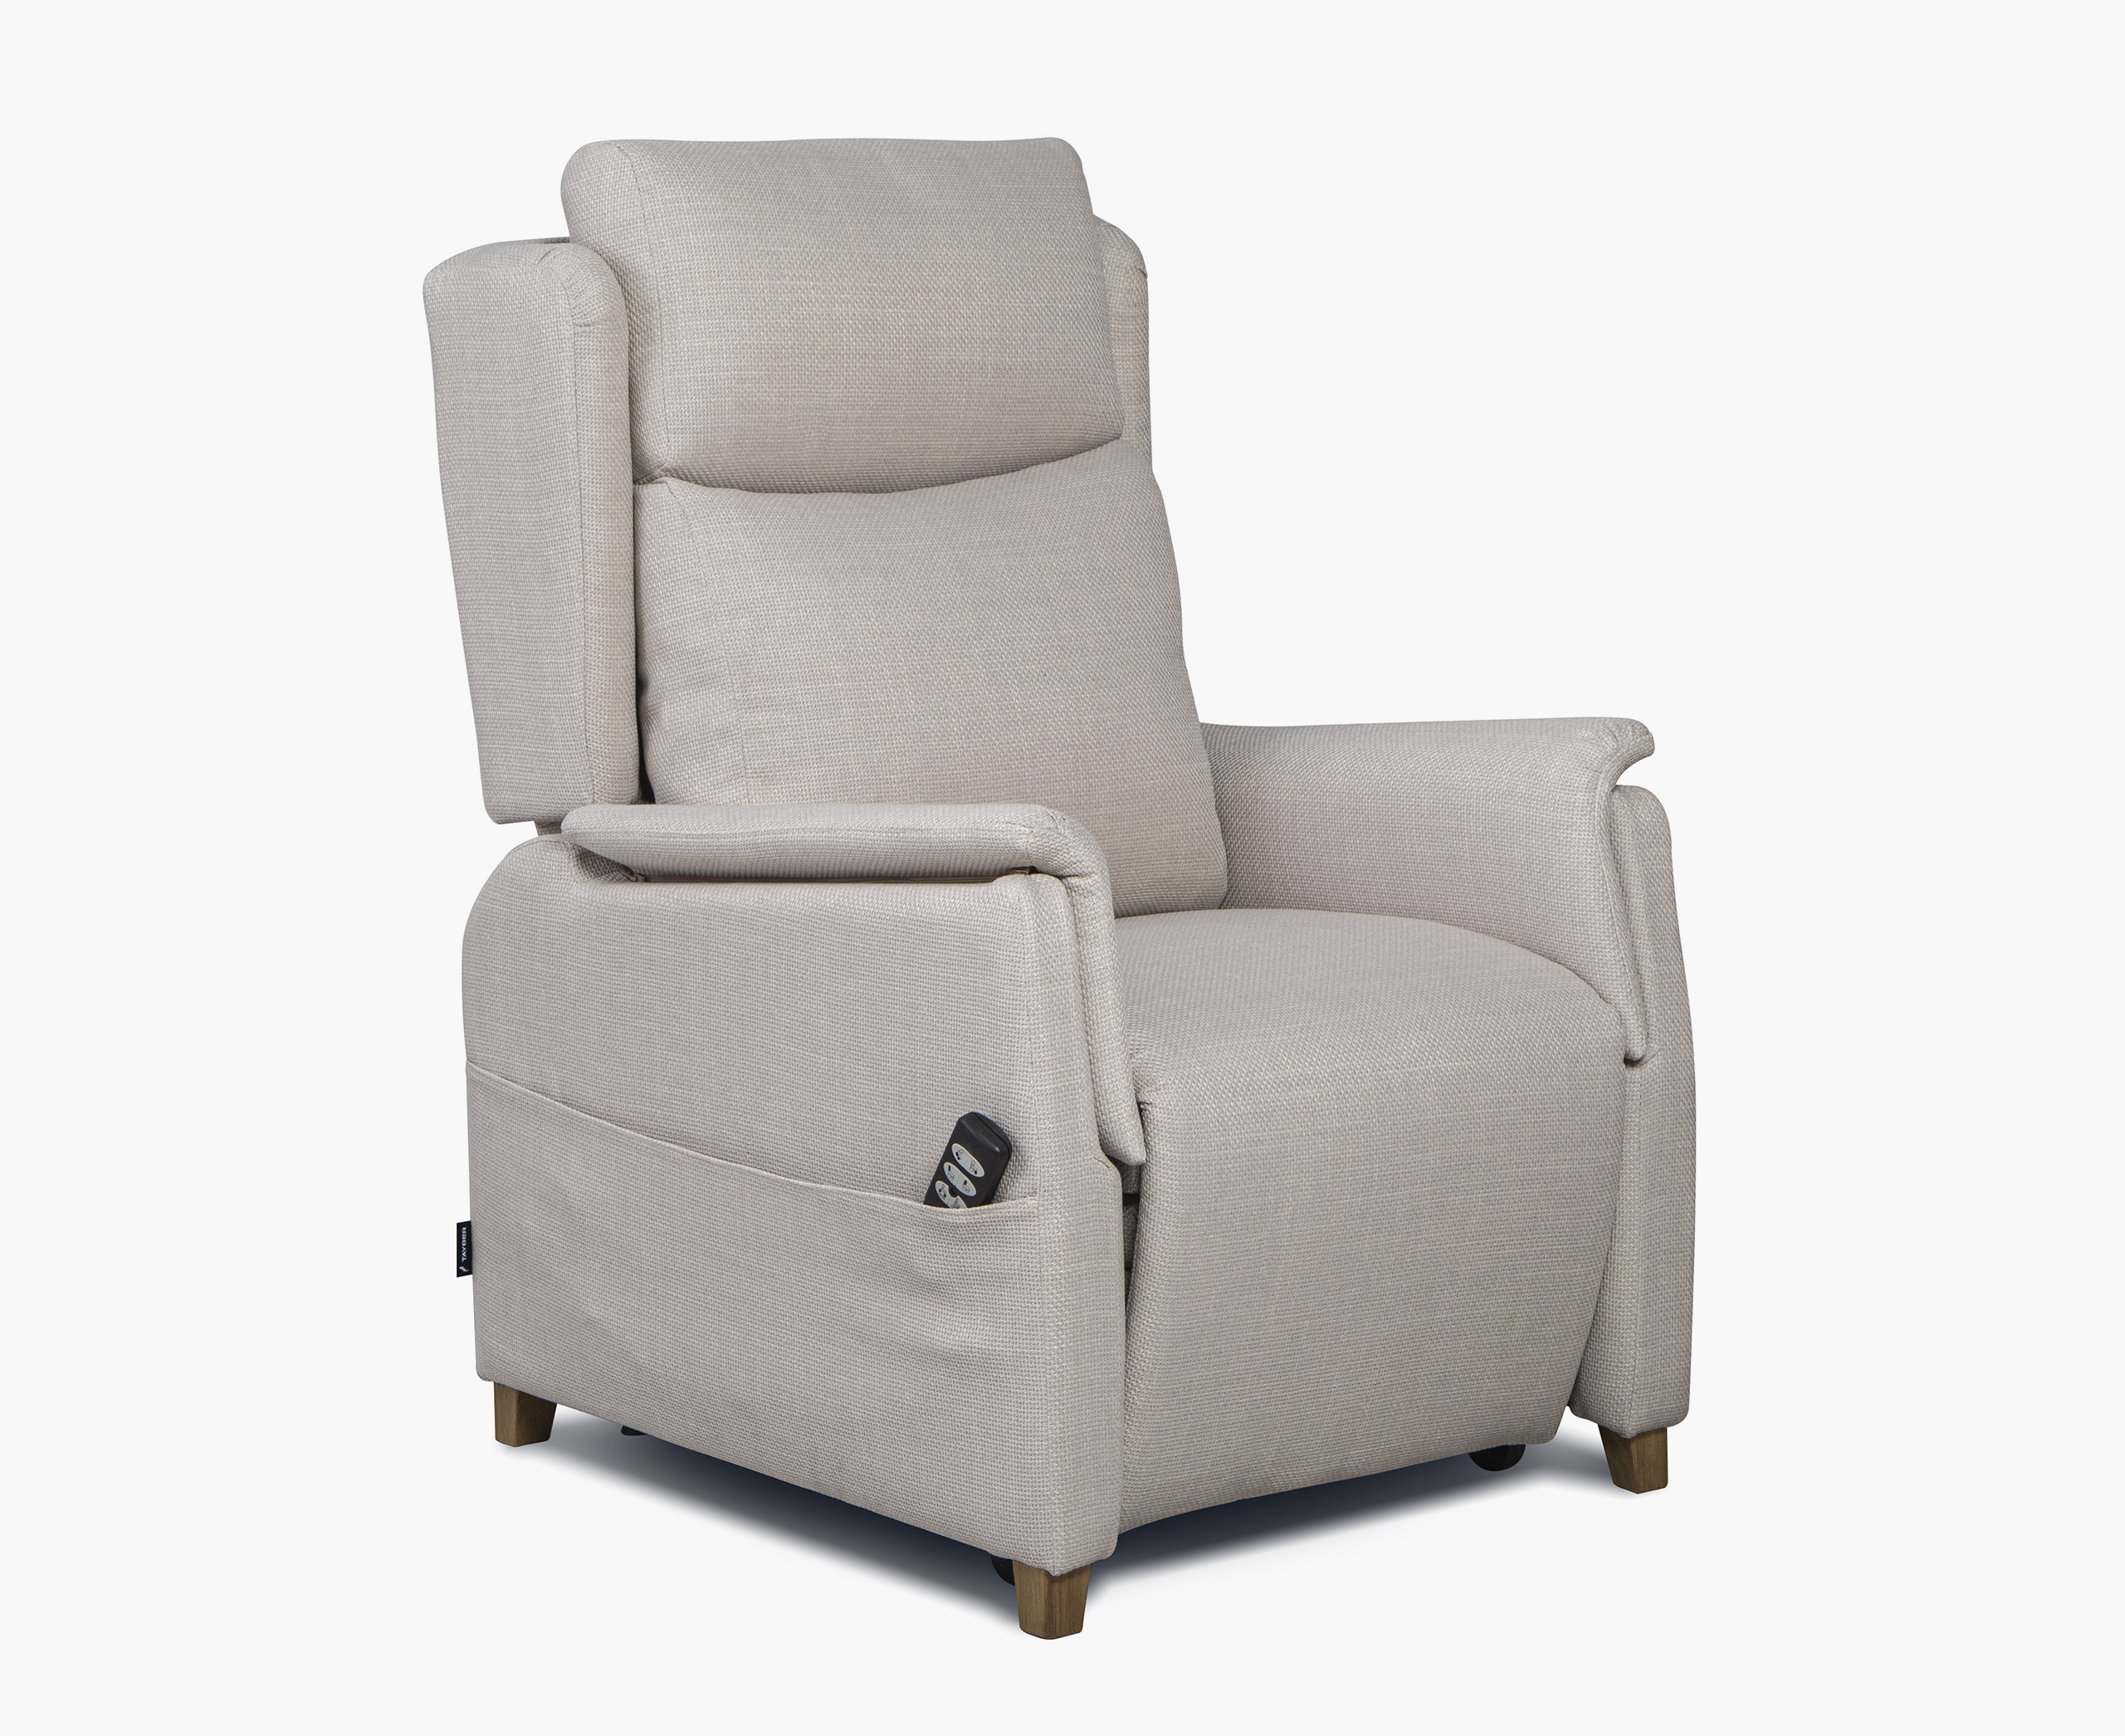 Dream Concept sillón balancín Hope CA-01gris / natural con transporte